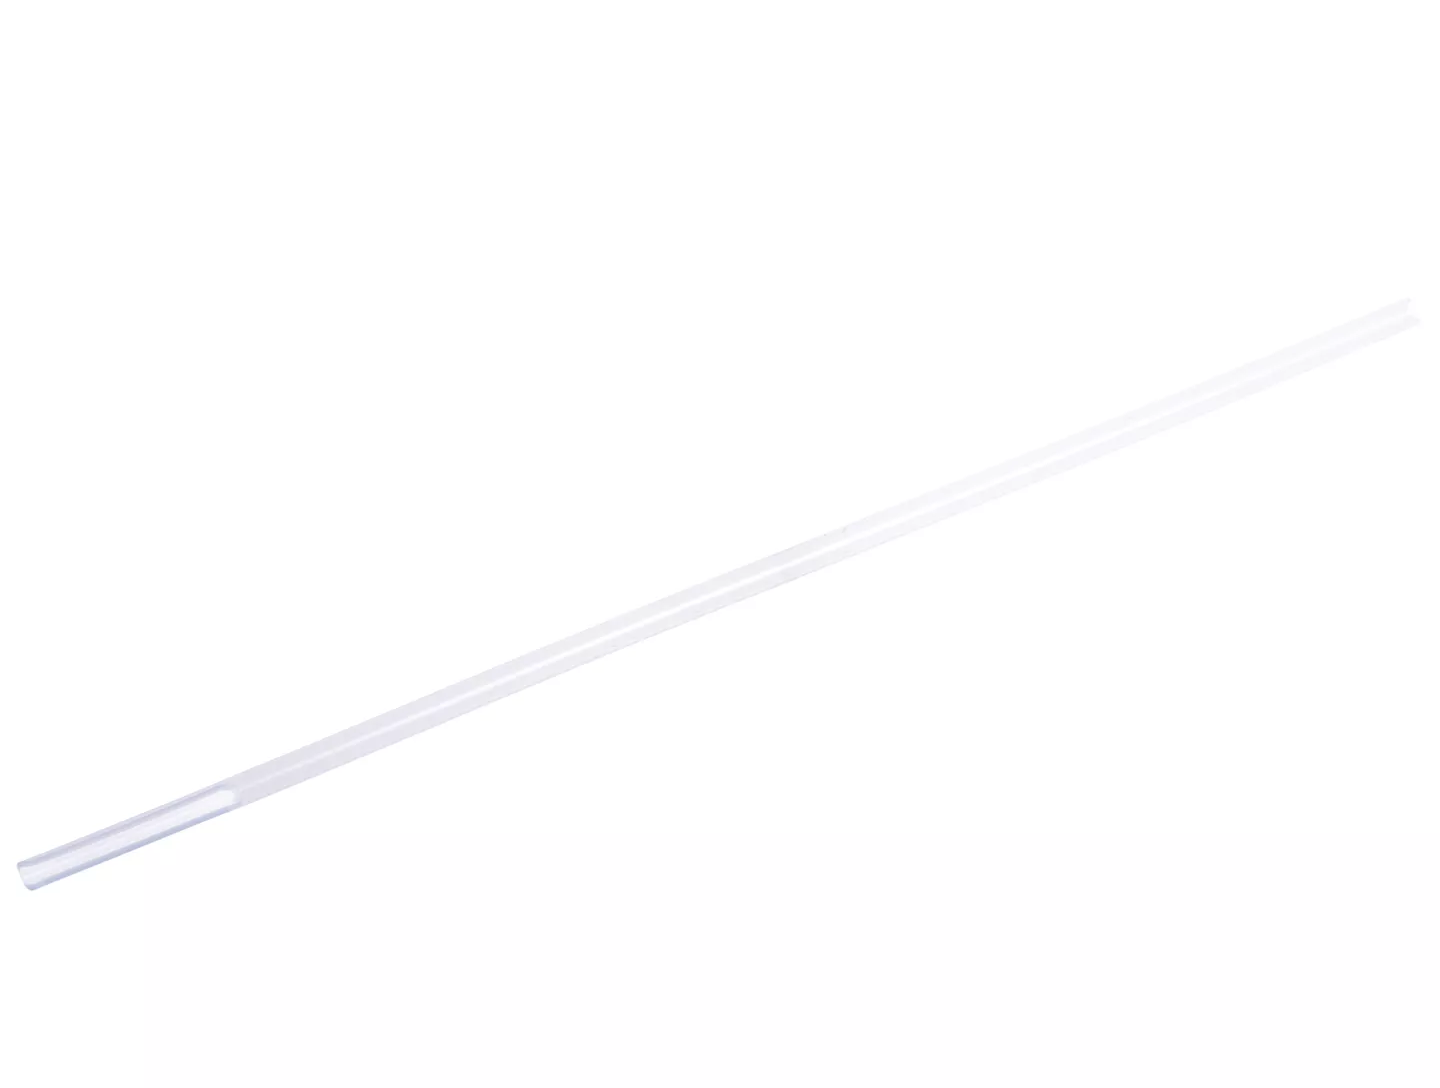 Трубка аспирационная (наконечник) гинекологическая Юнона диаметр 4,5мм, с продольным отверстием, одноразовая, стерильная